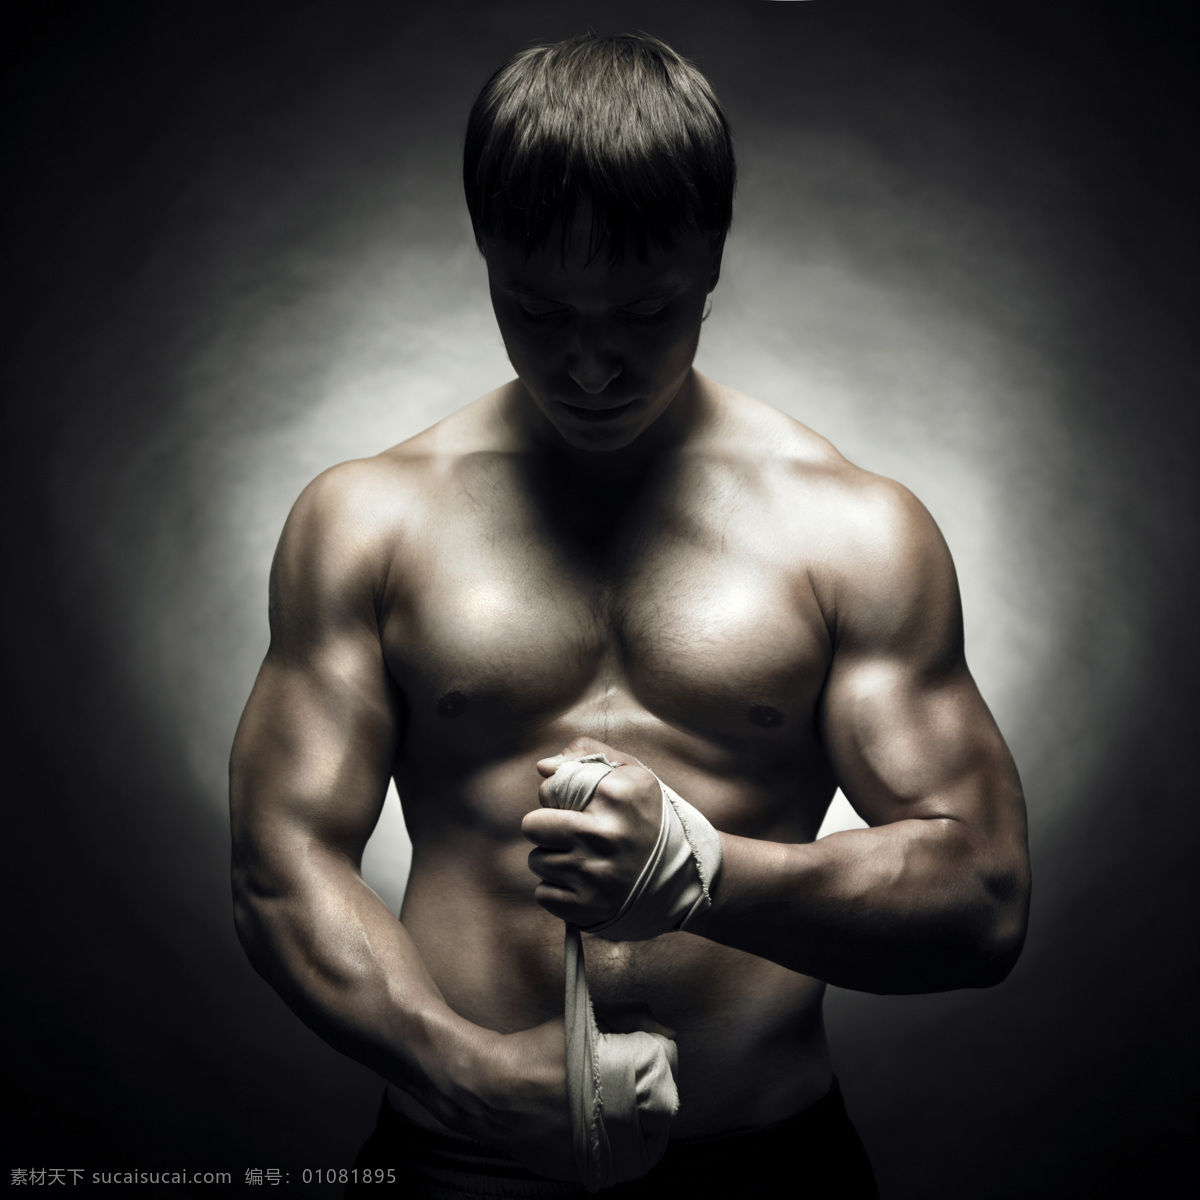 性感肌肉男 性感 肌肉 男人 男性 硬朗 壮硕 强壮 健美 身材 肌肉发达 人物图库 男性男人